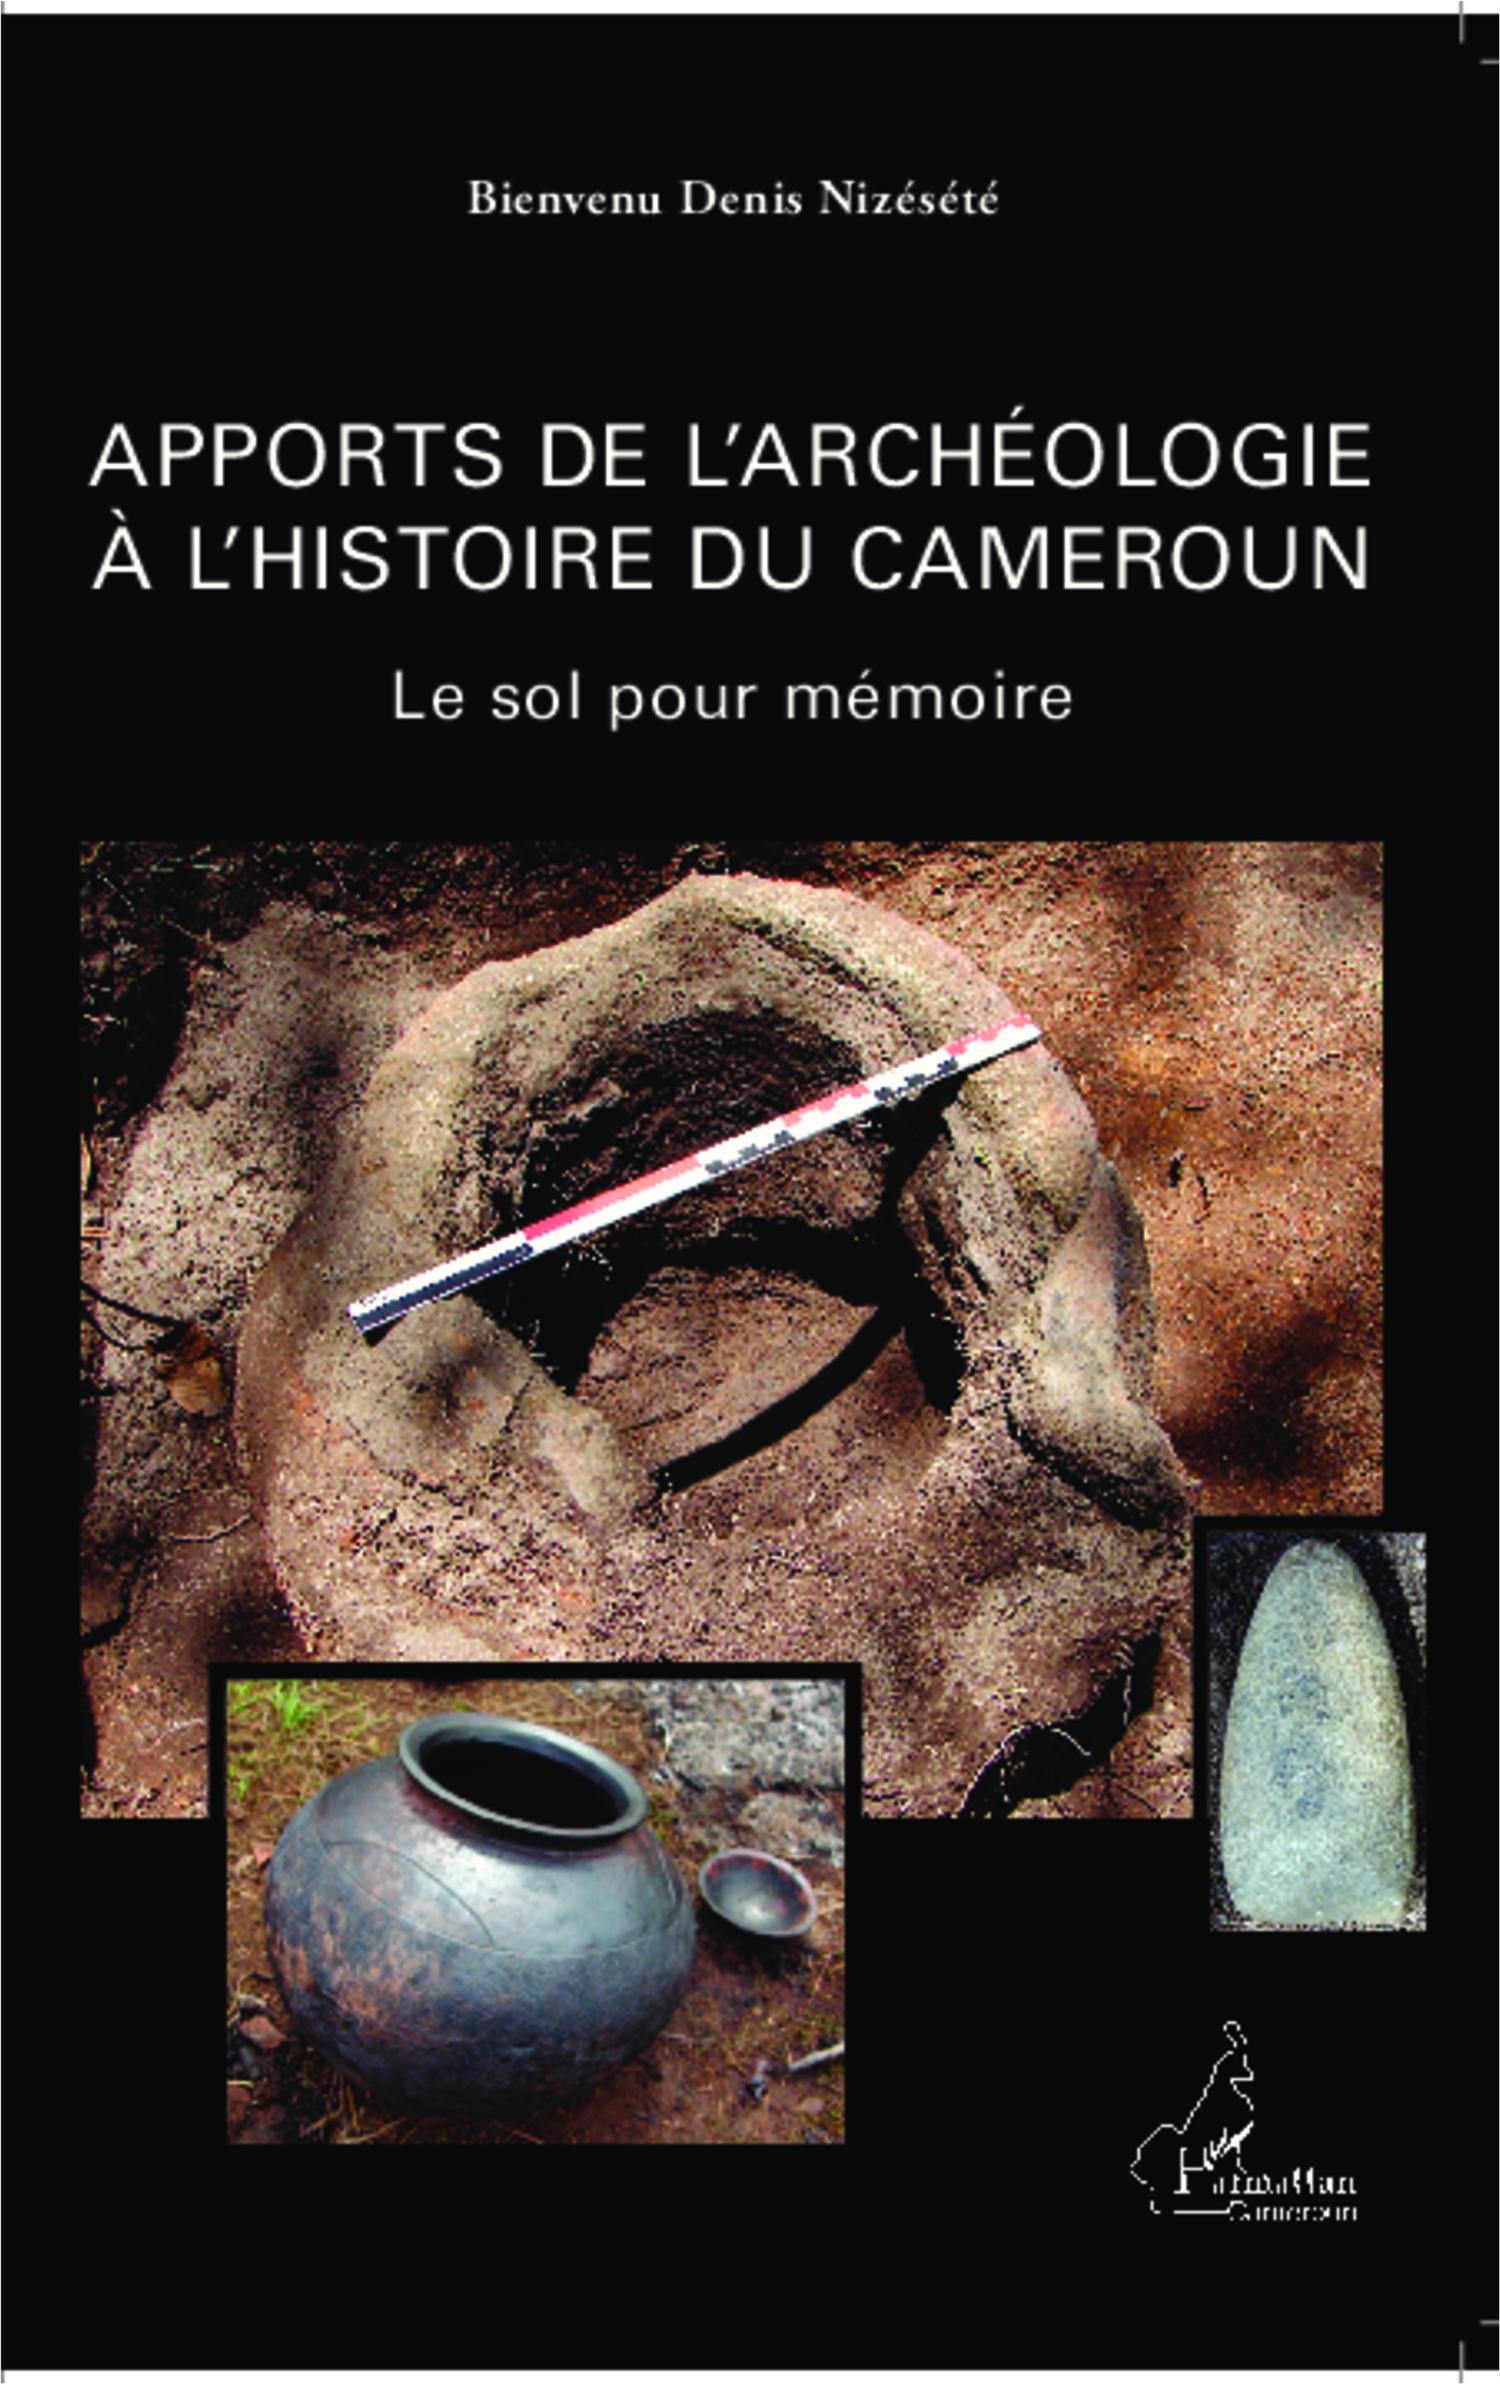 Apports de l'archéologie à l'histoire du Cameroun. Le sol pour mémoire, 2013, 426 p.